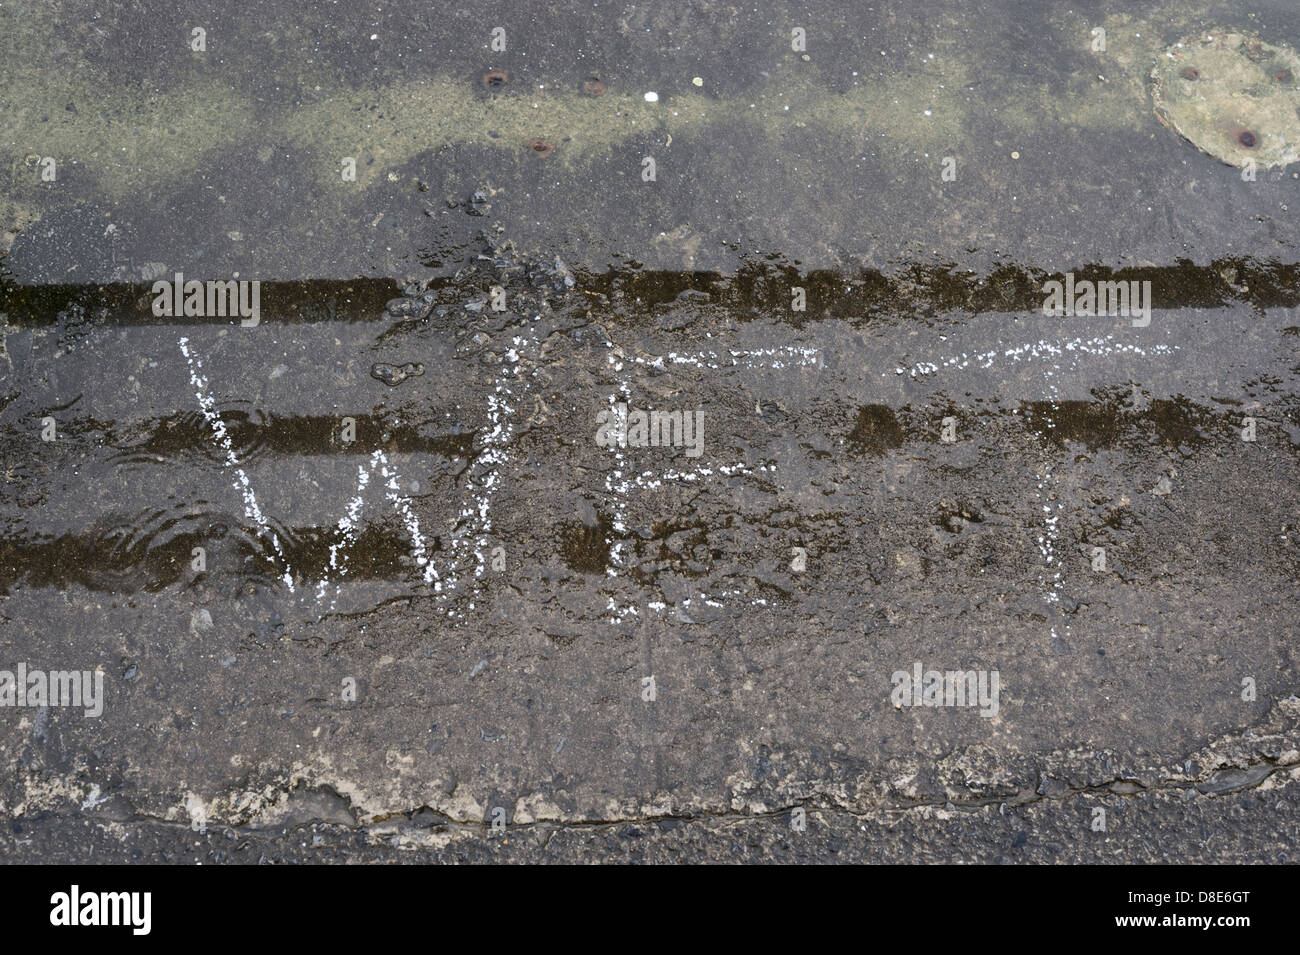 Das Wort nassen geschrieben in weißen Farbe auf Beton bei Nässe regnerisch. Stockfoto